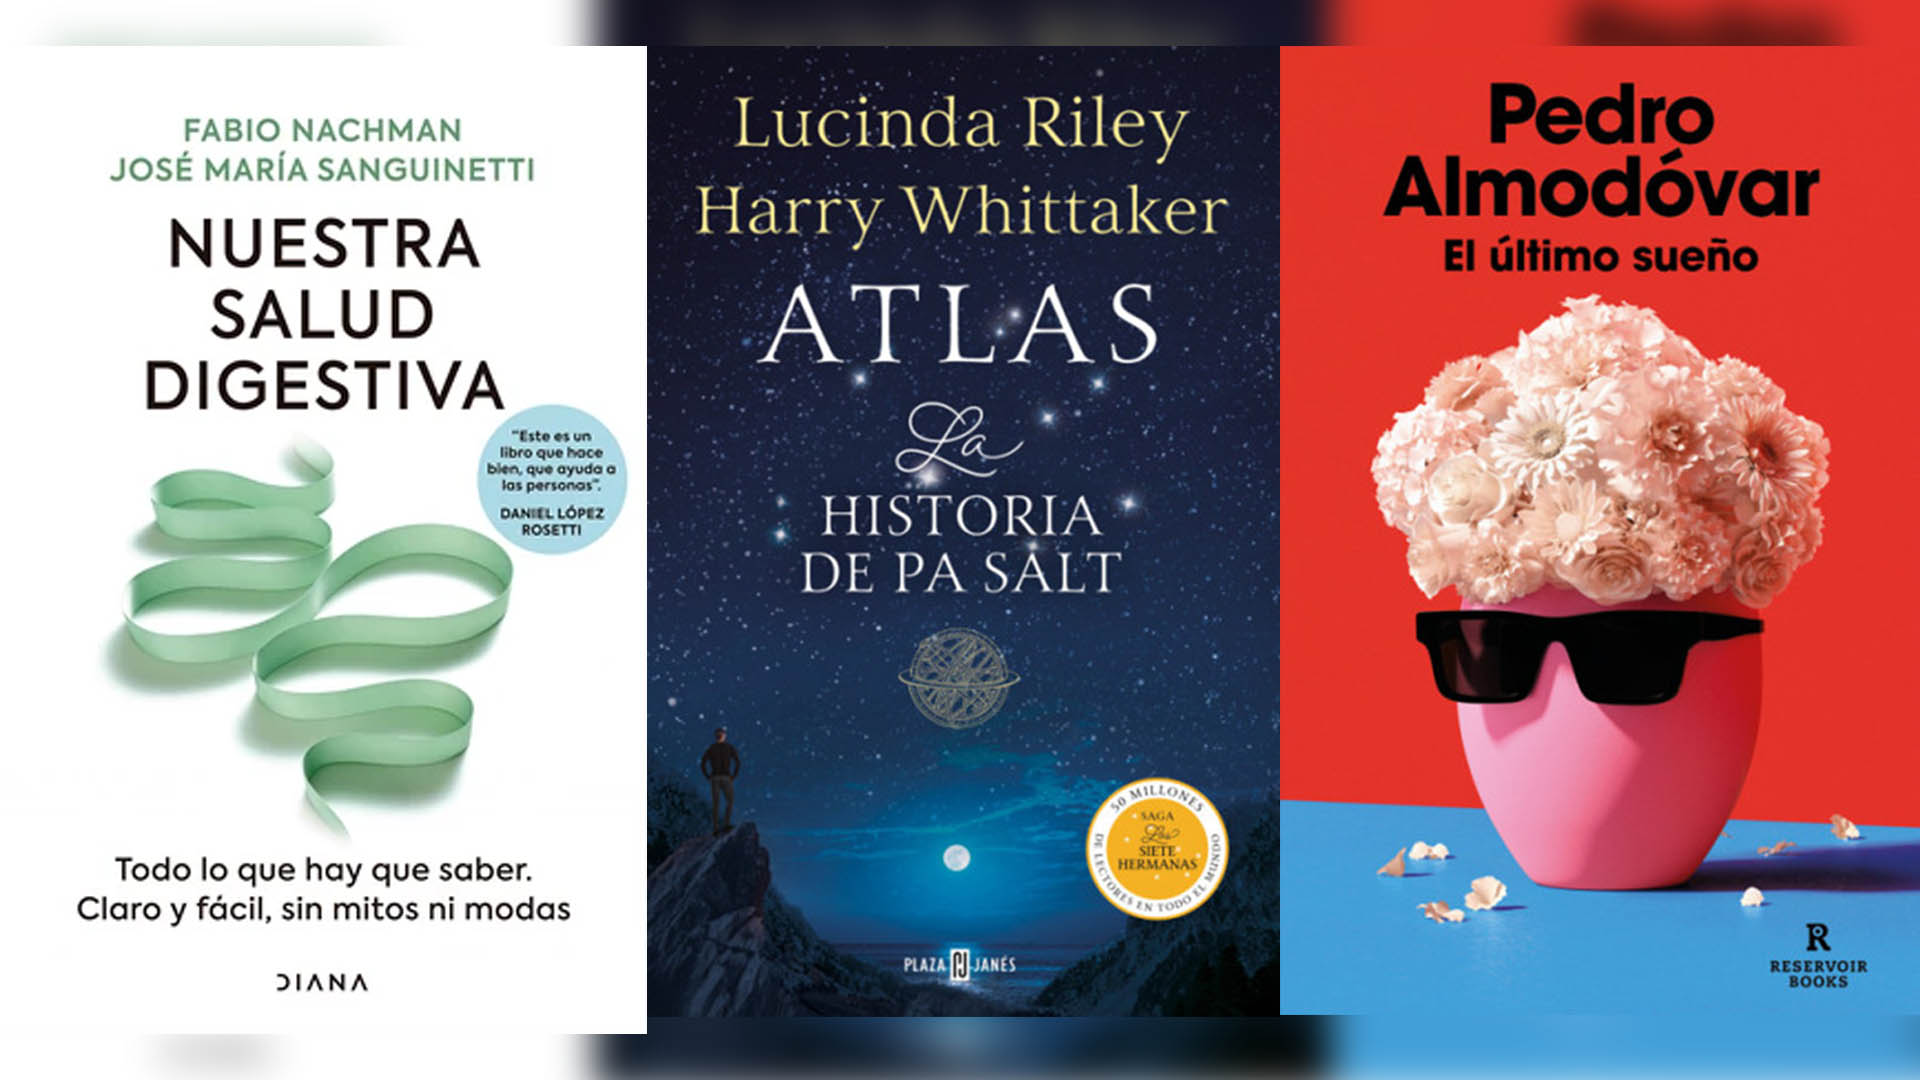 "Nuestra salud digestiva", "Atlas. La historia de Pa Salt" y "El último sueño", tres libros para incluir a la biblioteca digital.